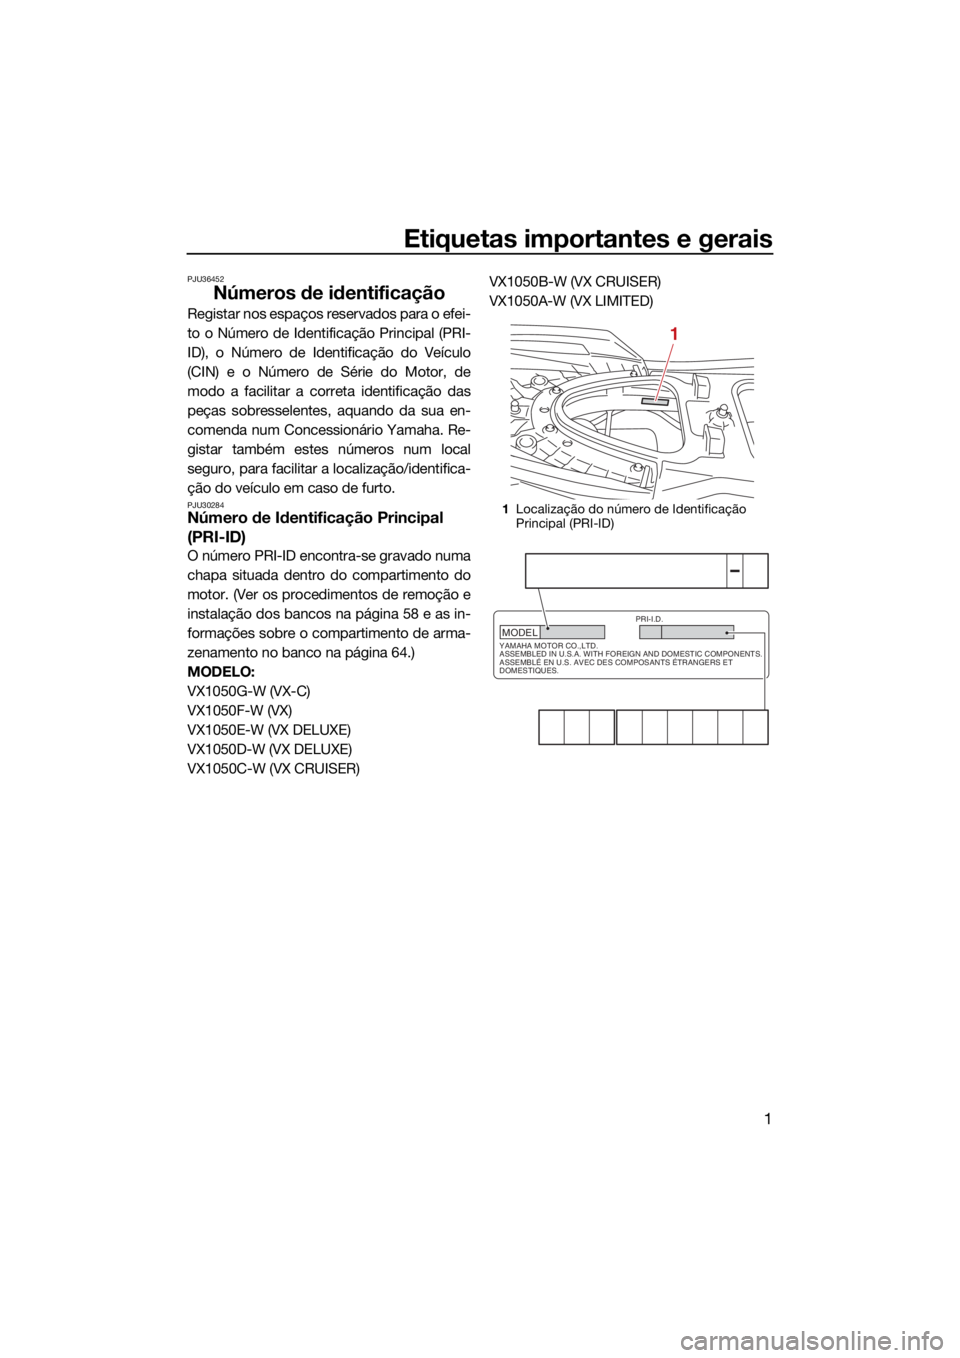 YAMAHA VX 2021  Manual de utilização (in Portuguese) Etiquetas importantes e gerais
1
PJU36452
Números de identificação
Registar nos espaços reservados para o efei-
to o Número de Identificação Principal (PRI-
ID), o Número de Identificação do